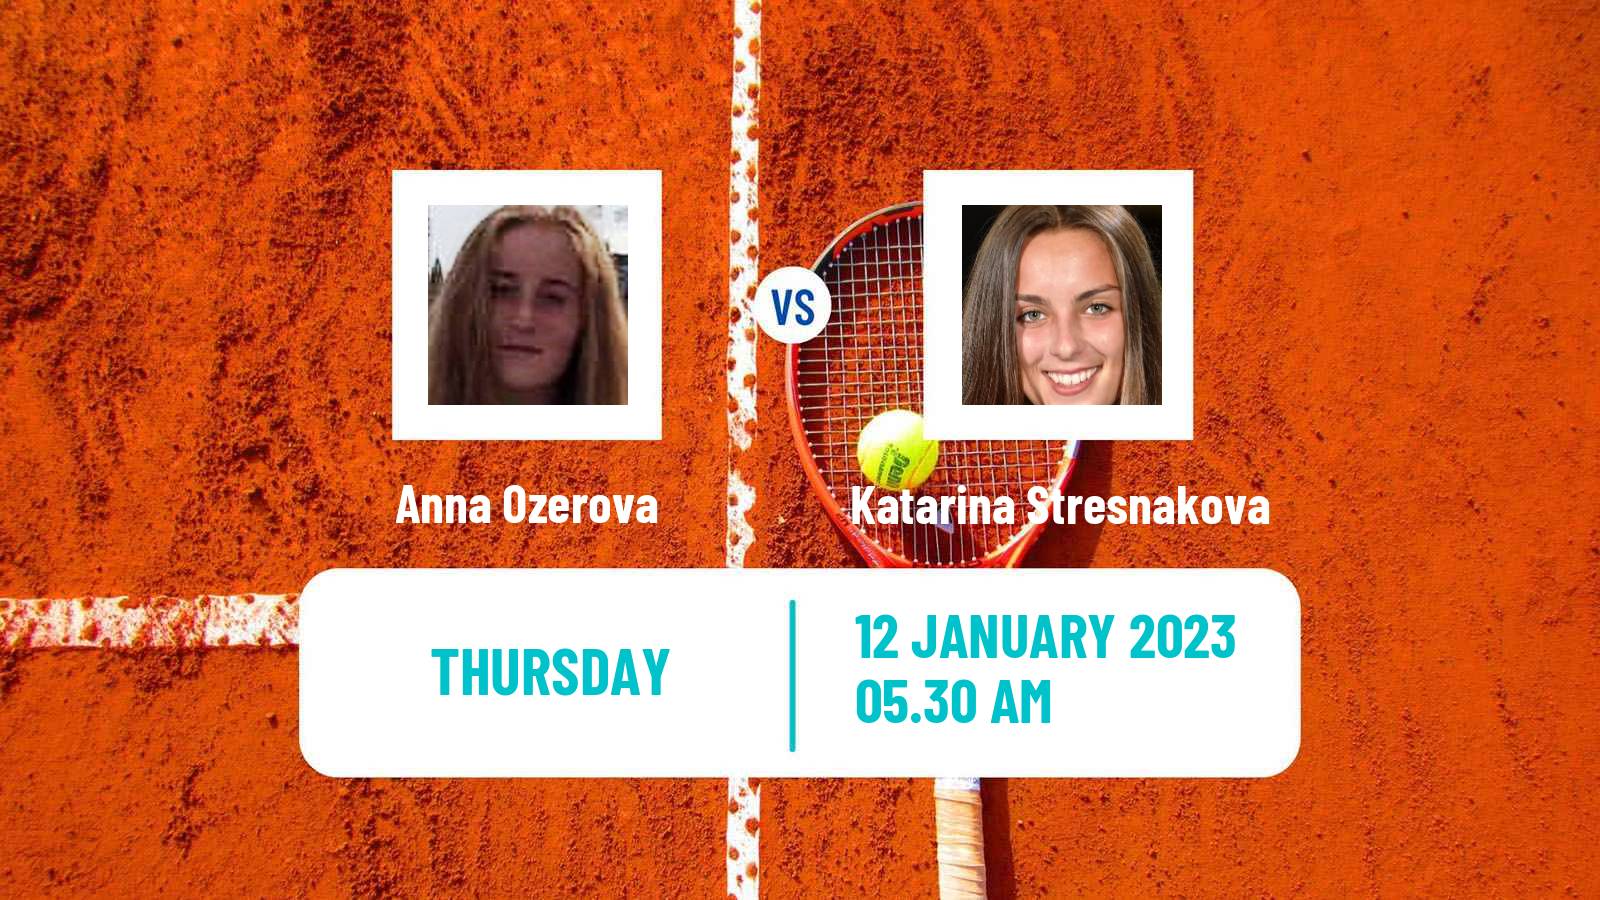 Tennis ITF Tournaments Anna Ozerova - Katarina Stresnakova